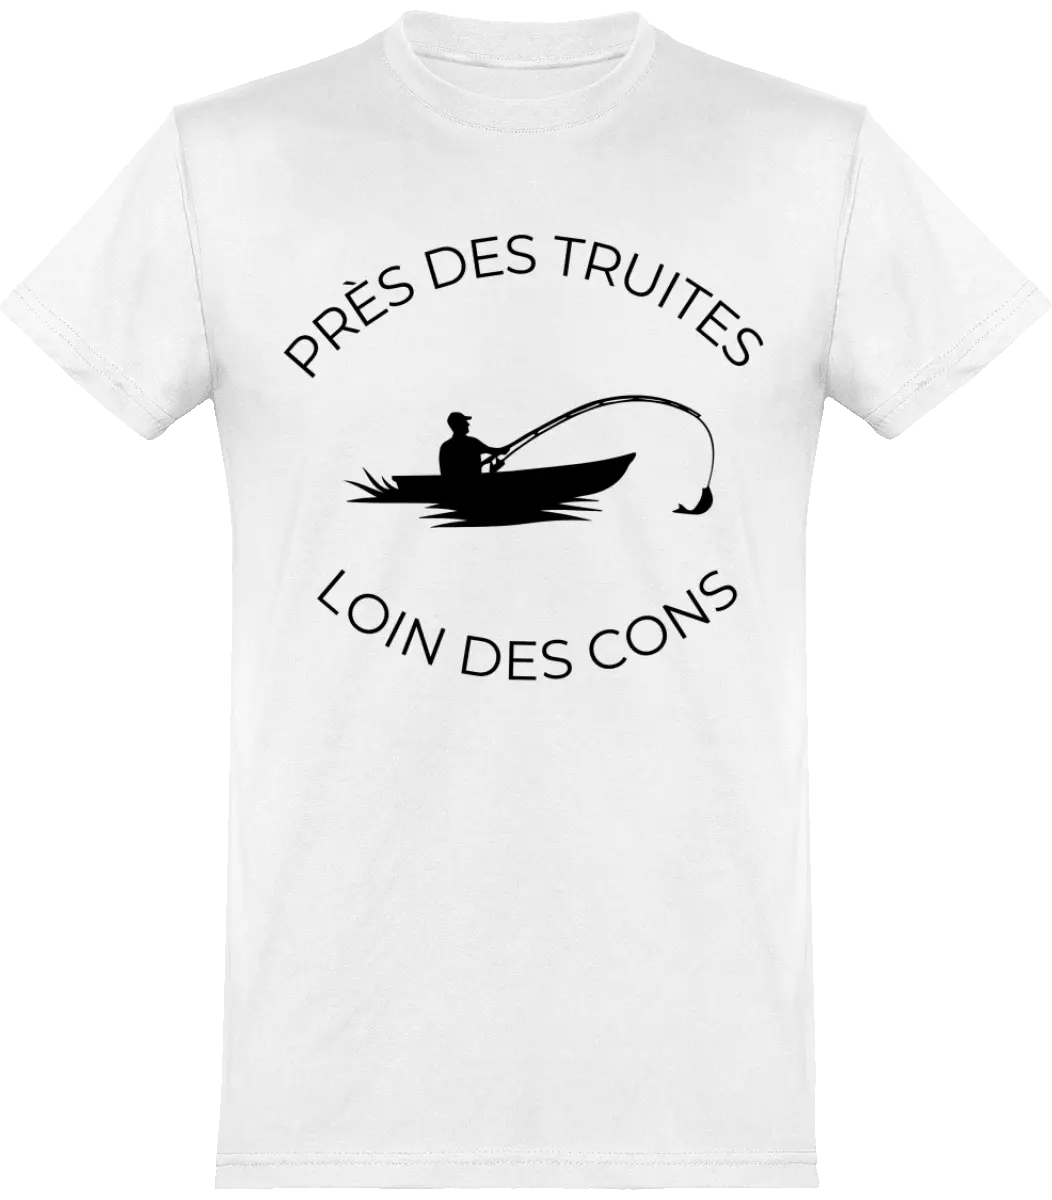 T-shirt pêcheur "Près des truites loin des cons" | Mixte - French Humour